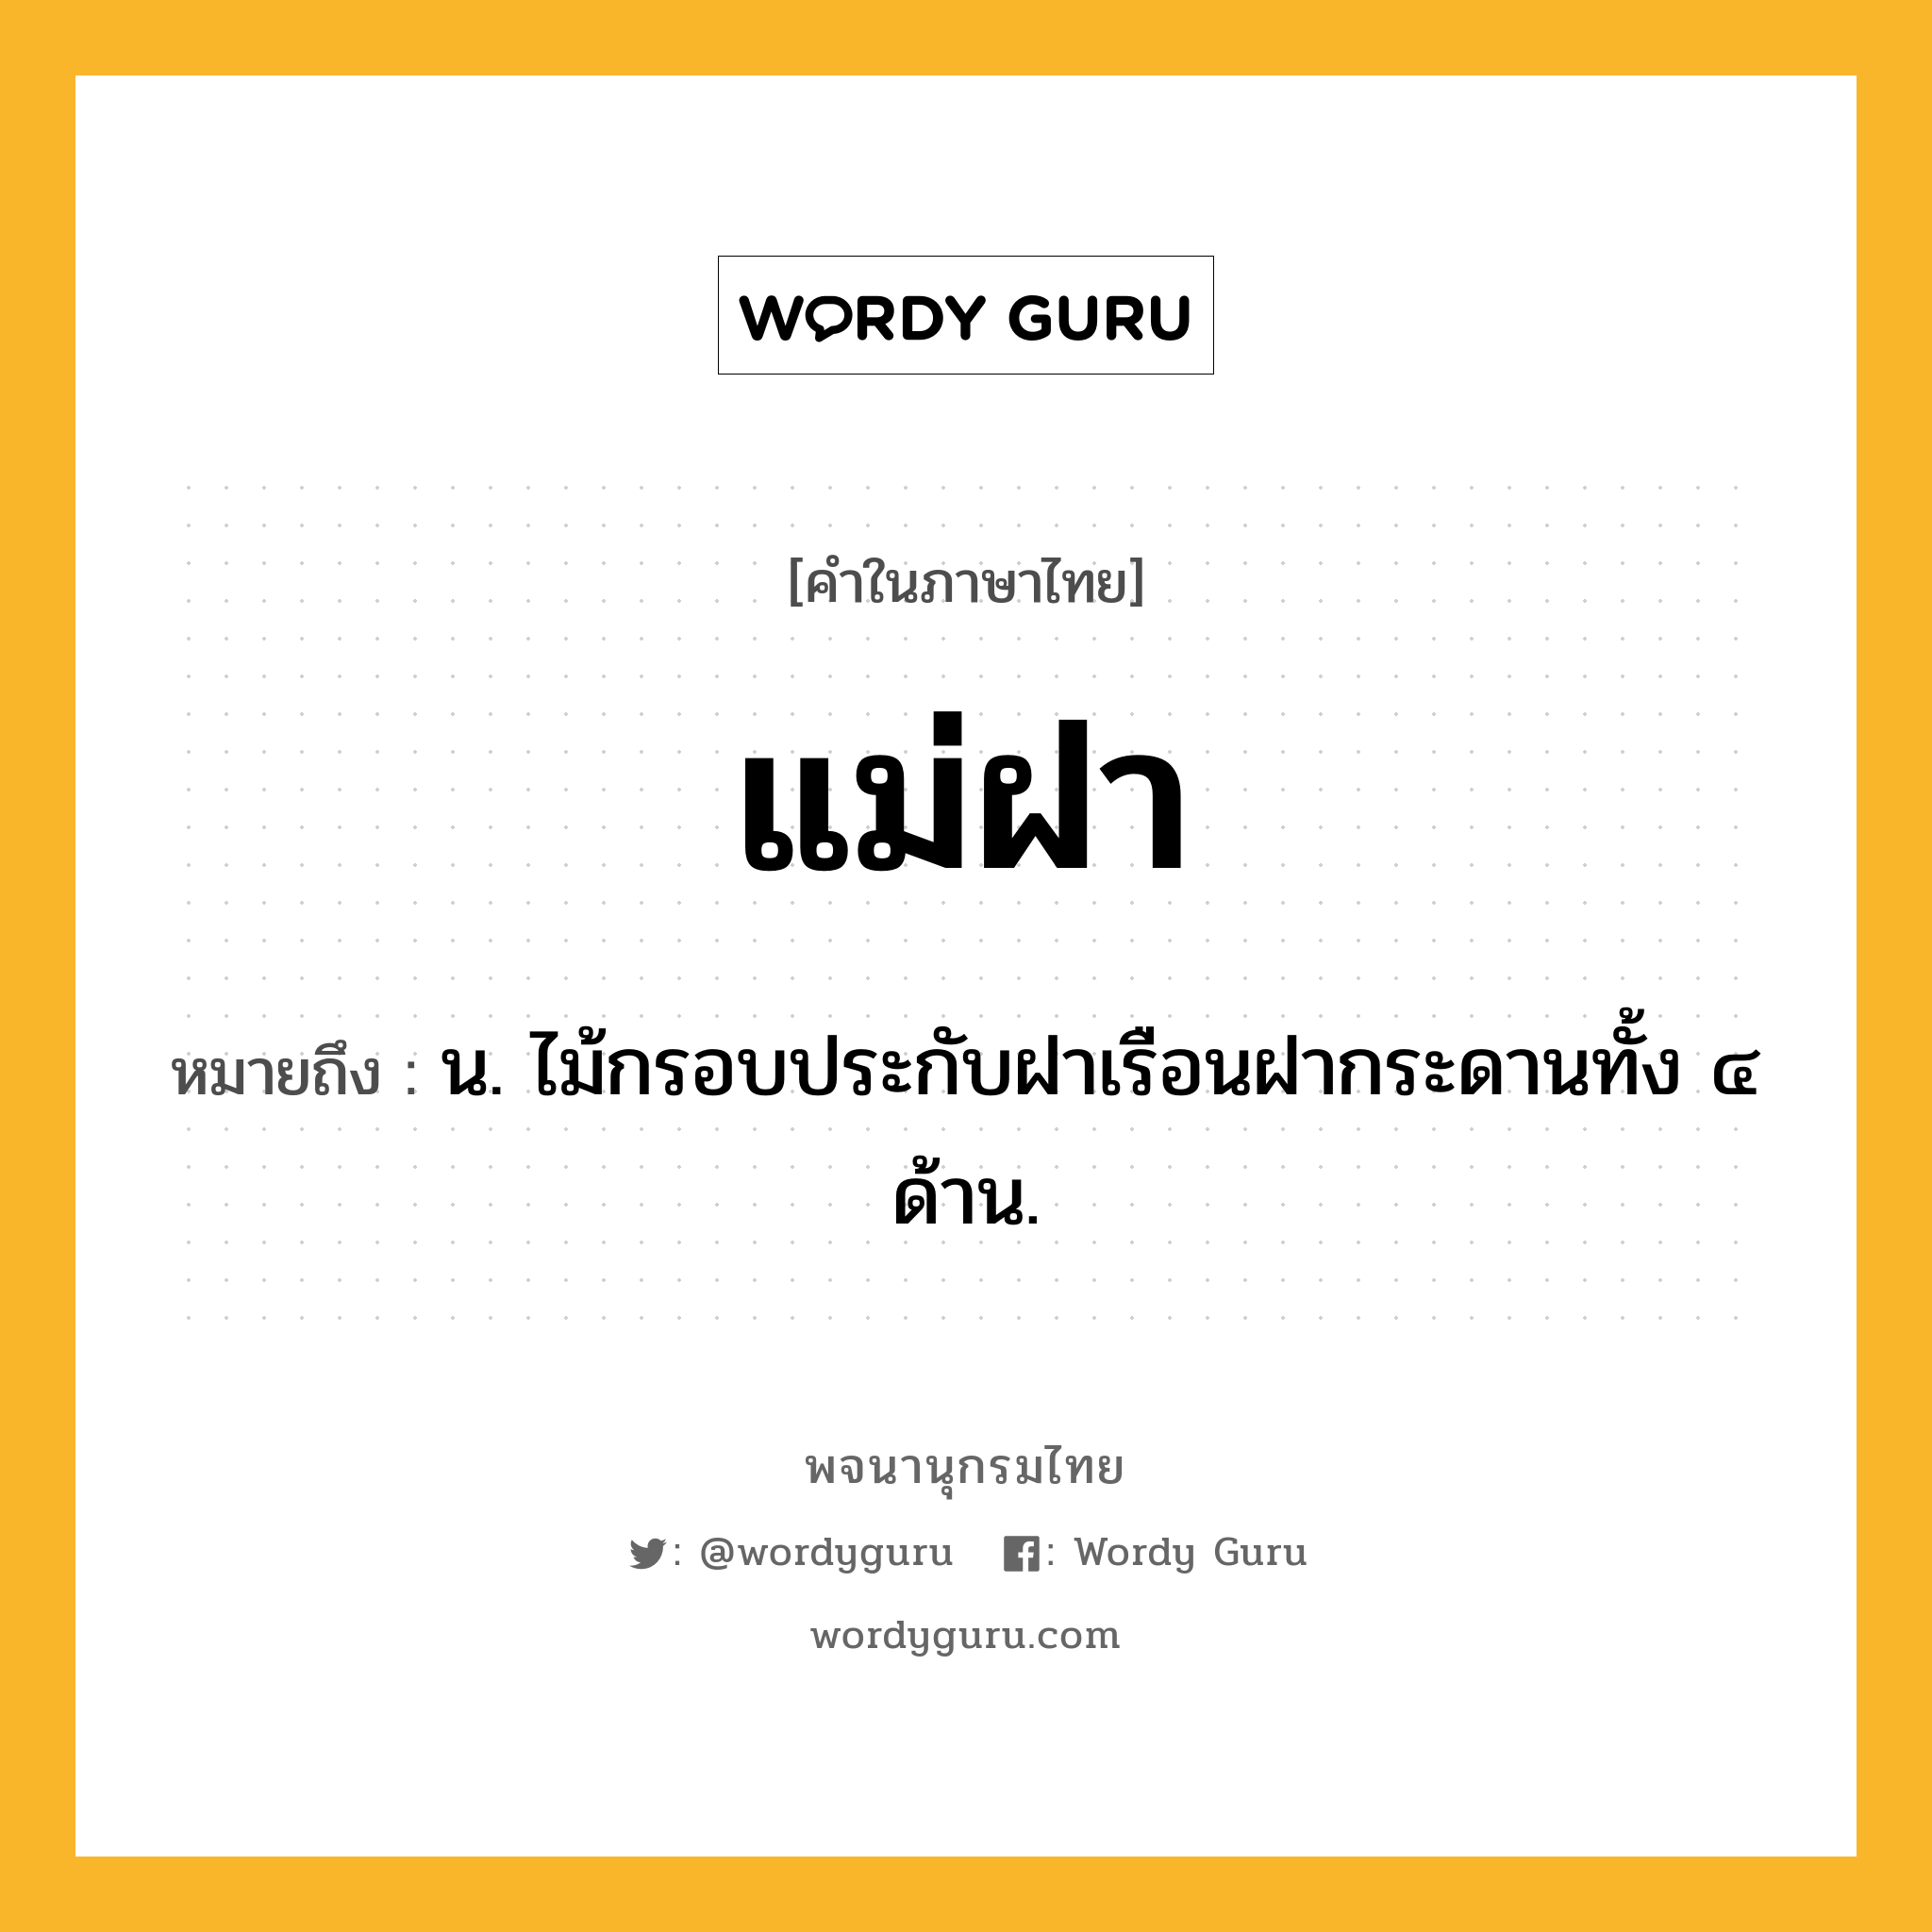 แม่ฝา ความหมาย หมายถึงอะไร?, คำในภาษาไทย แม่ฝา หมายถึง น. ไม้กรอบประกับฝาเรือนฝากระดานทั้ง ๔ ด้าน.